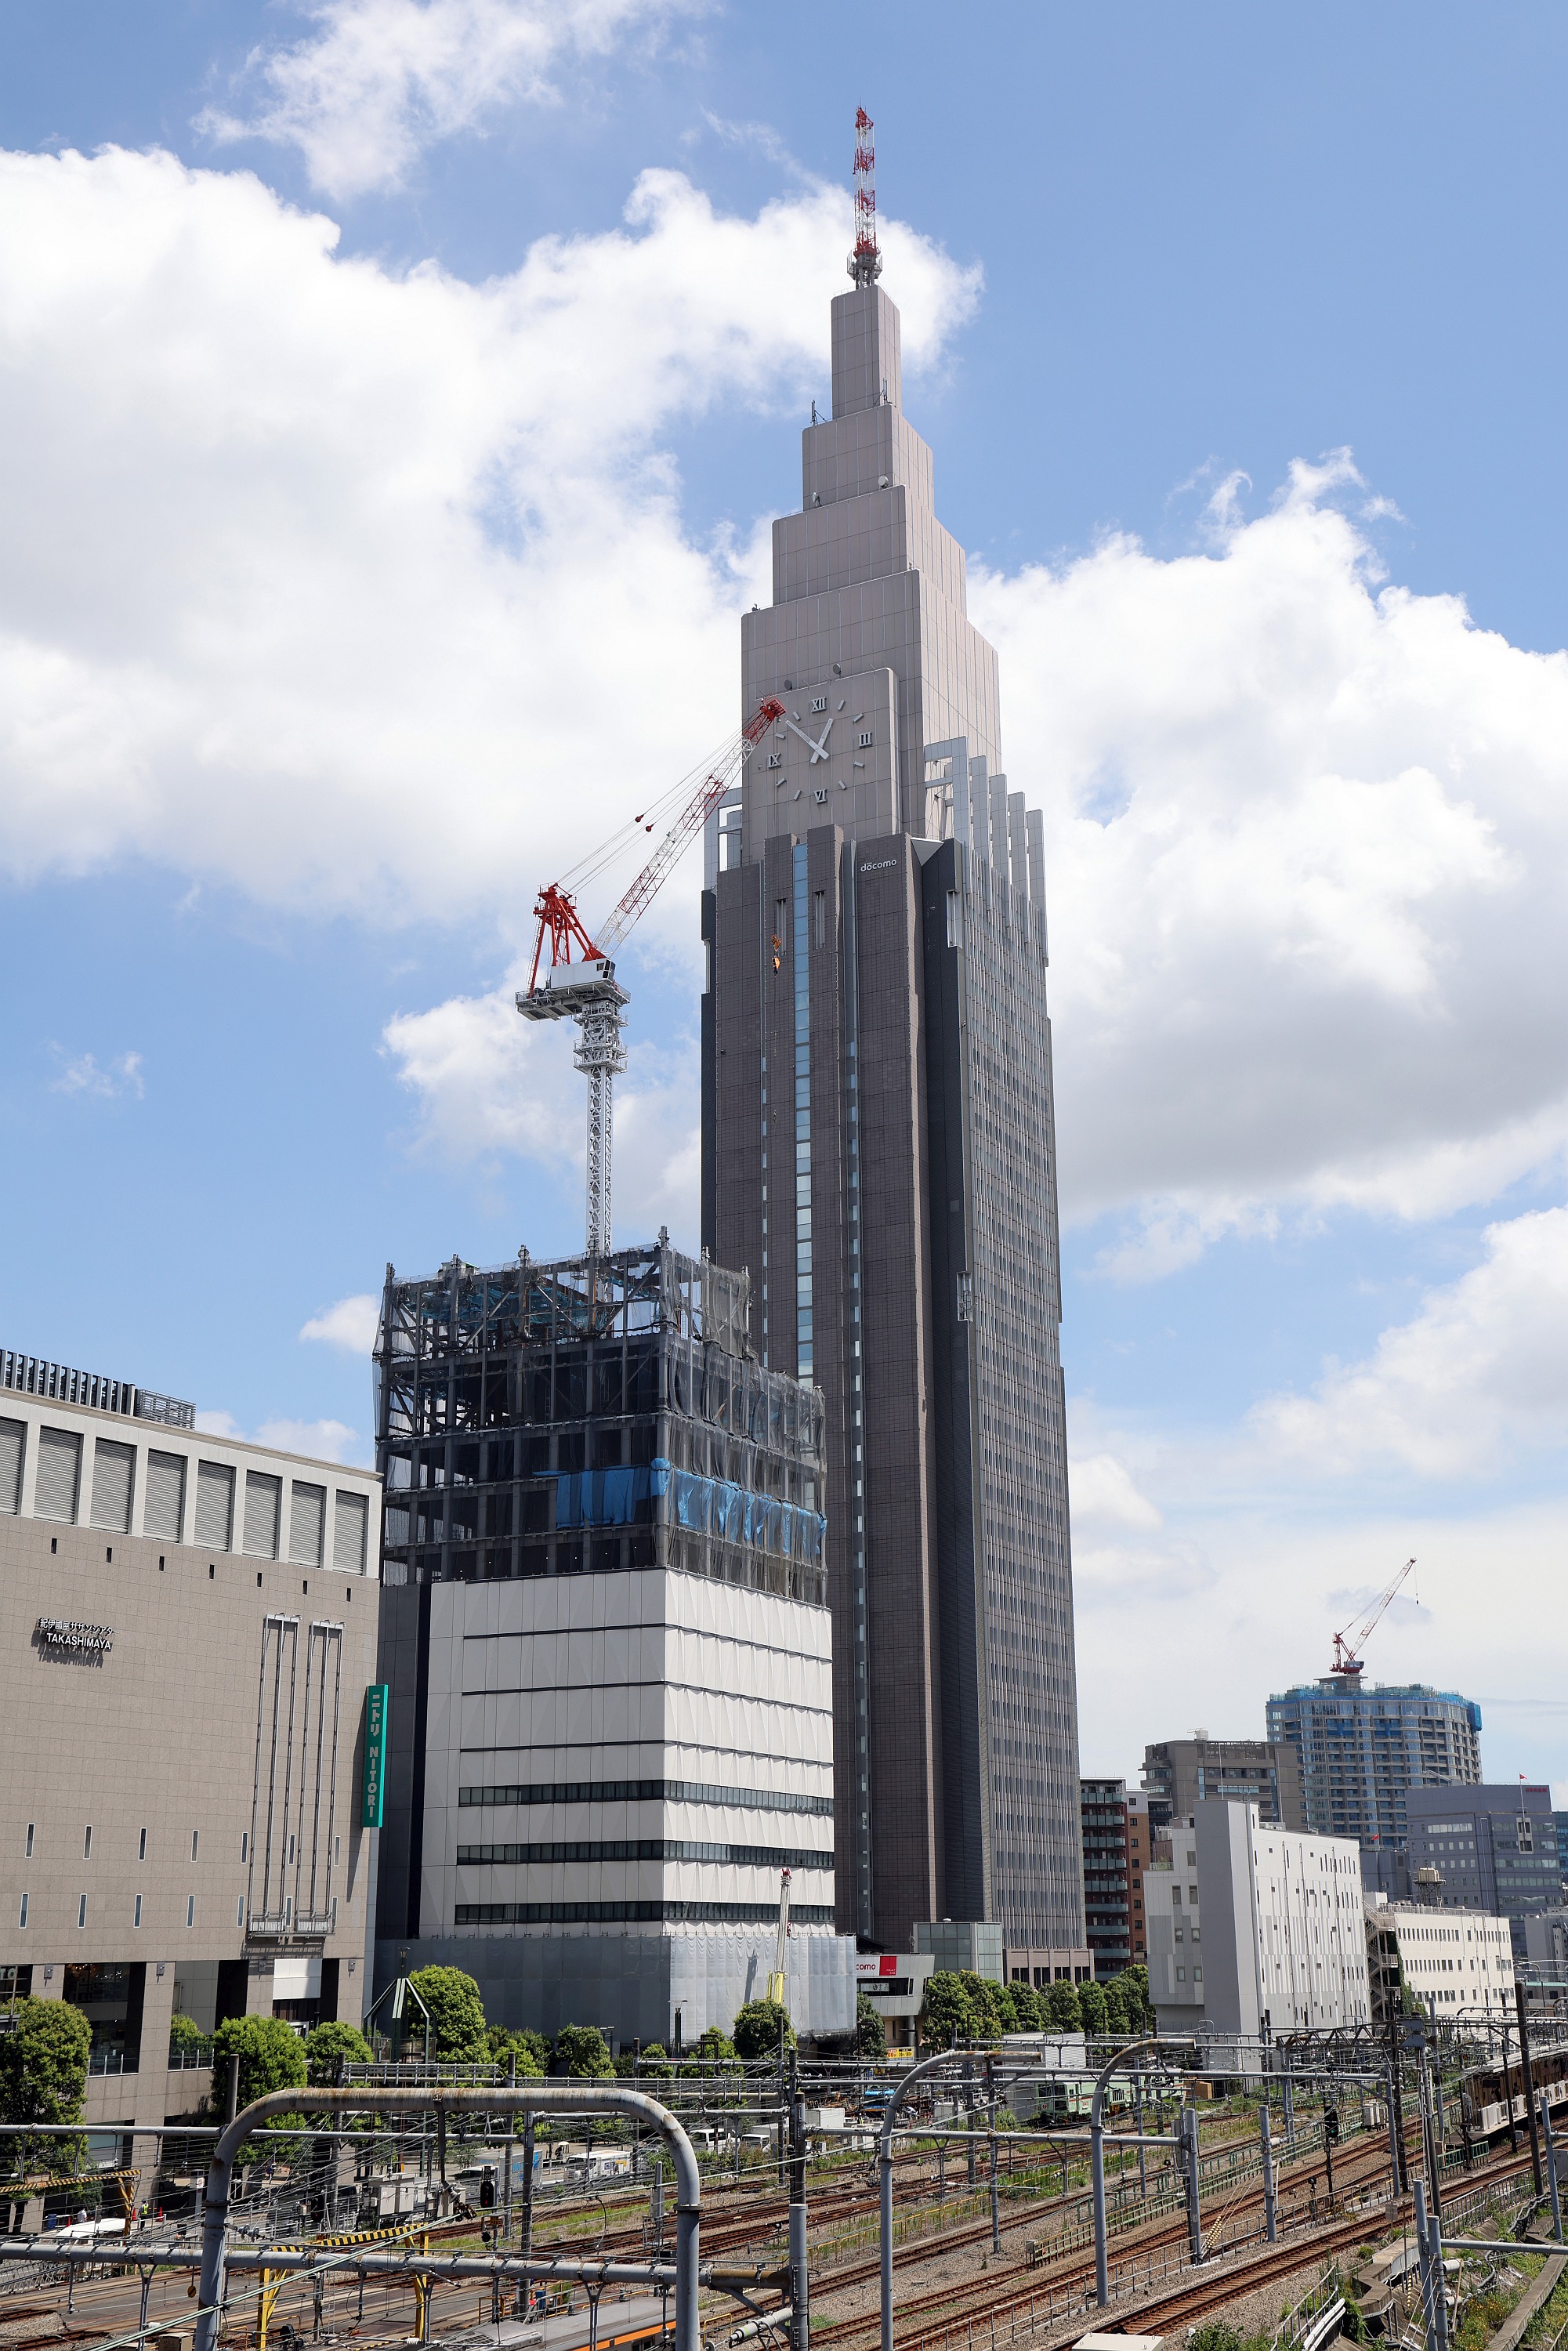 地上13階 高さ85 34m 仮称 ドコモ代々木第二ビル の建設状況 ドコモタワーの北側が建設地 22 7 25 超高層マンション 超高層ビル